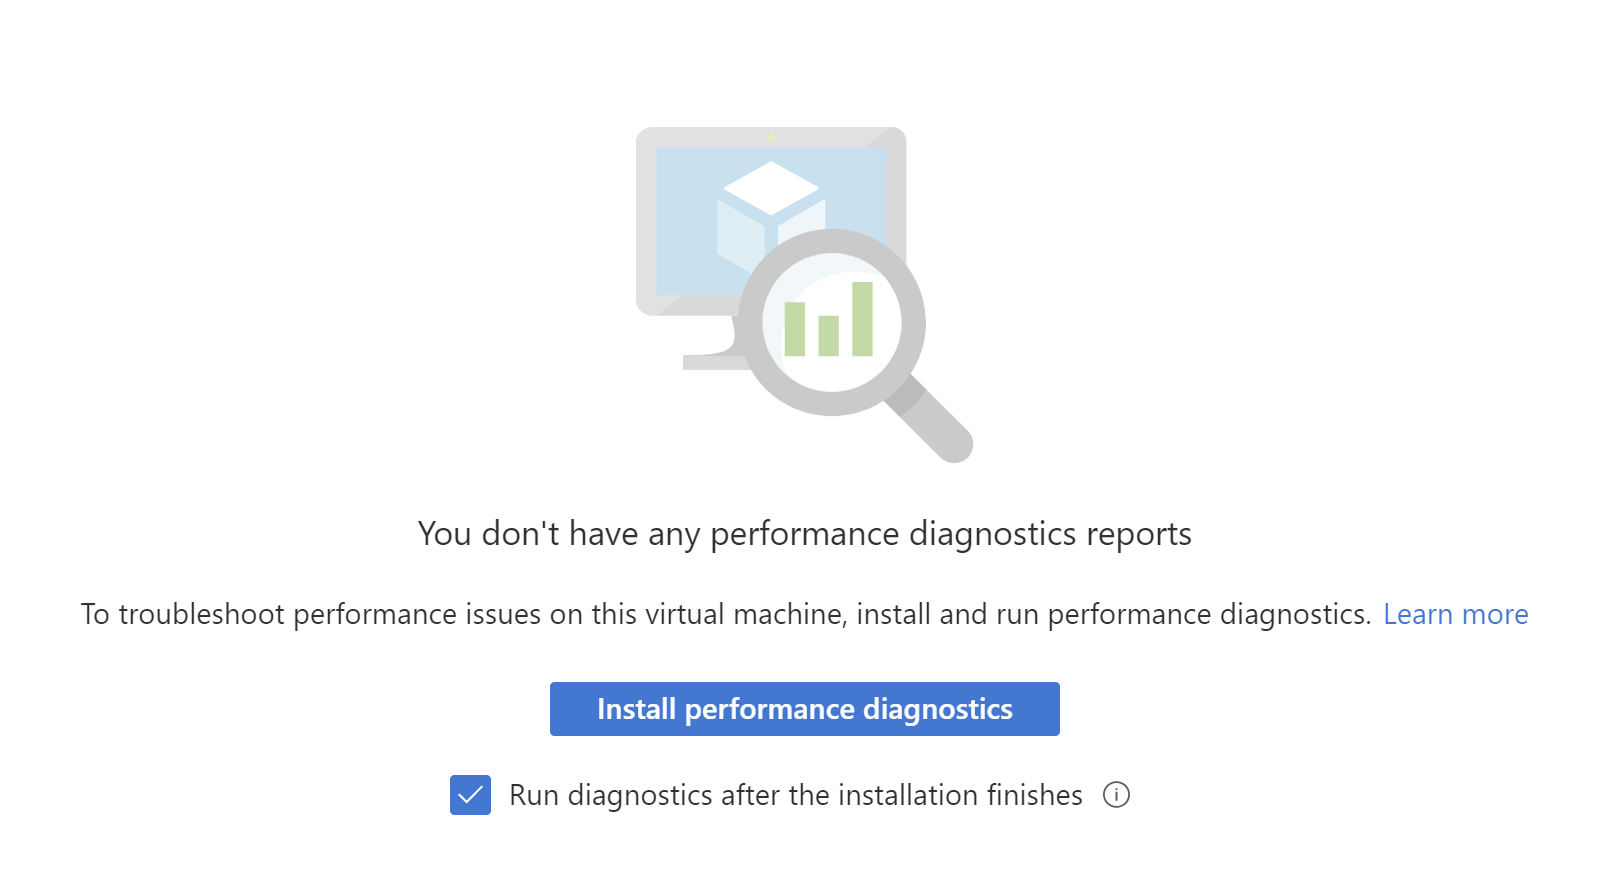 Captura de tela do botão de instalação do diagnóstico de desempenho. A opção Executar diagnósticos após o término da instalação está marcada.